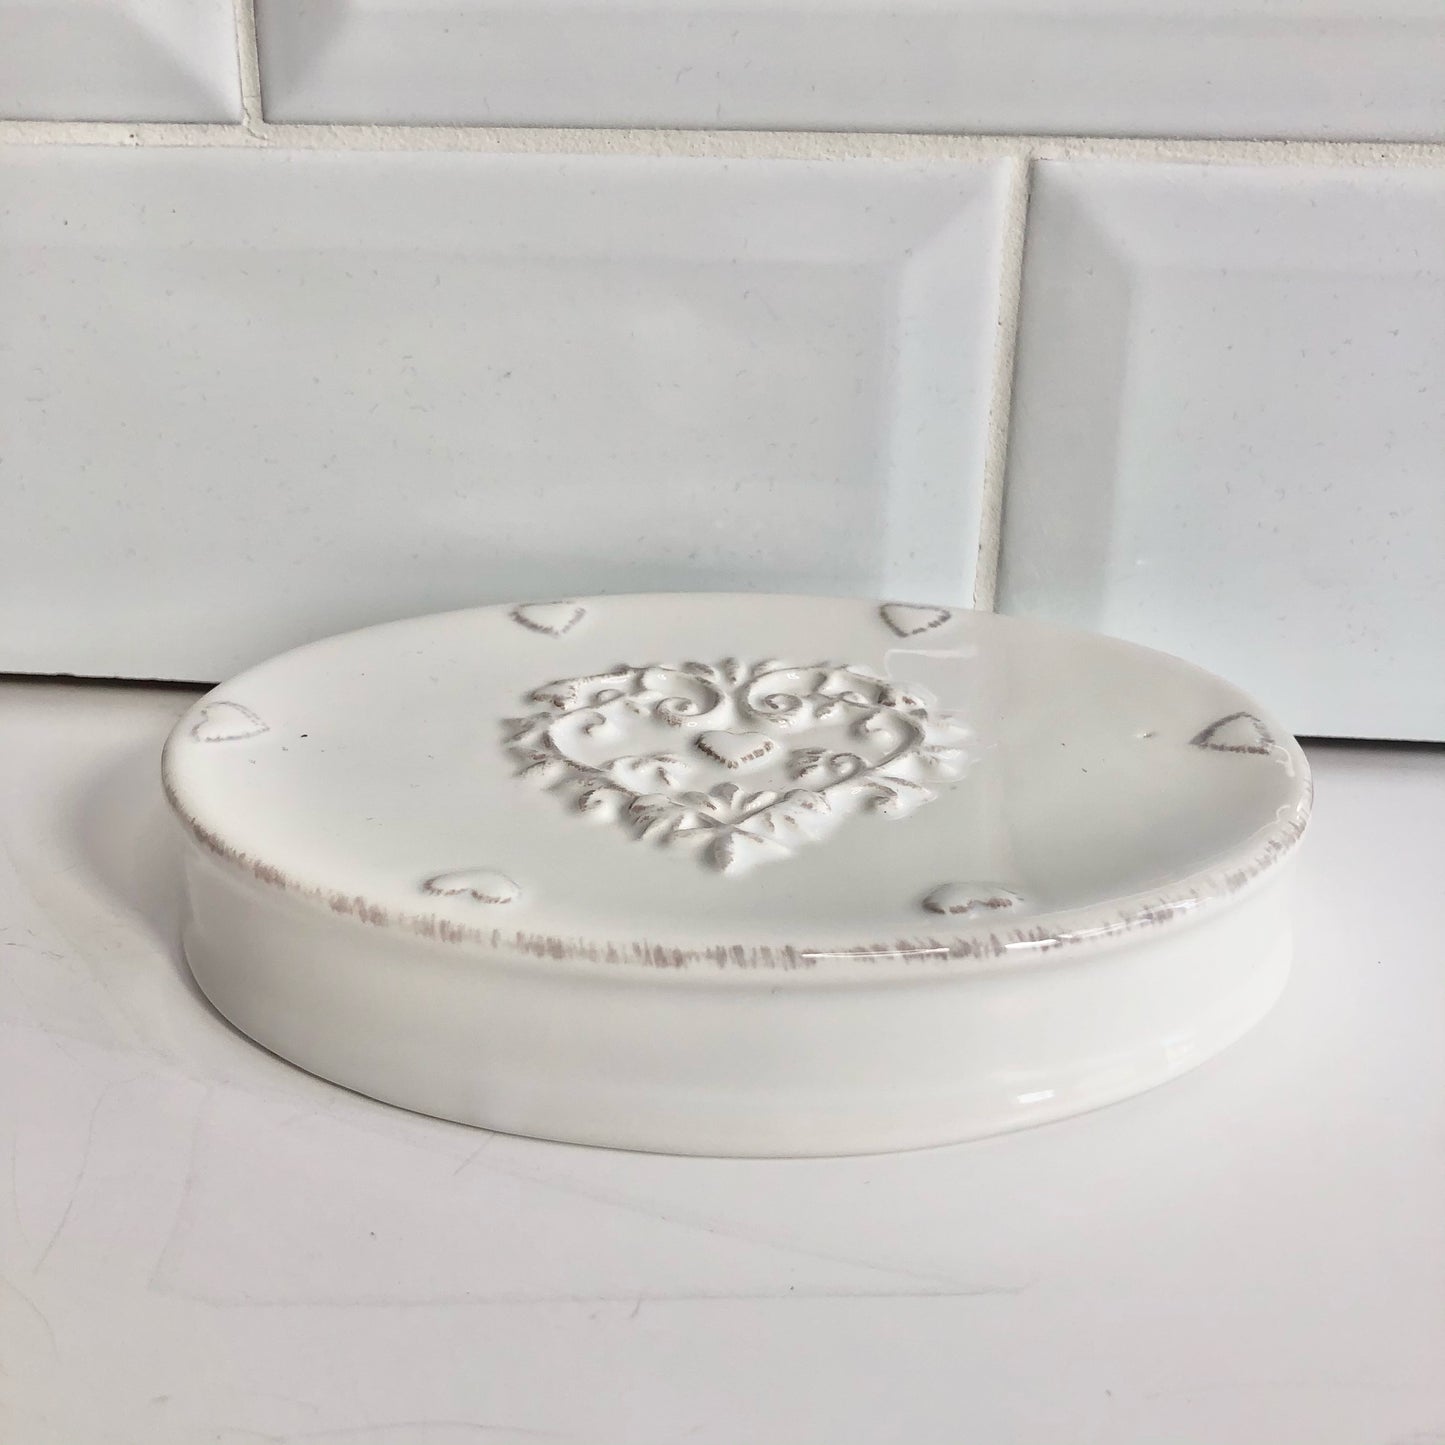 Ceramic Heart Soap Dish